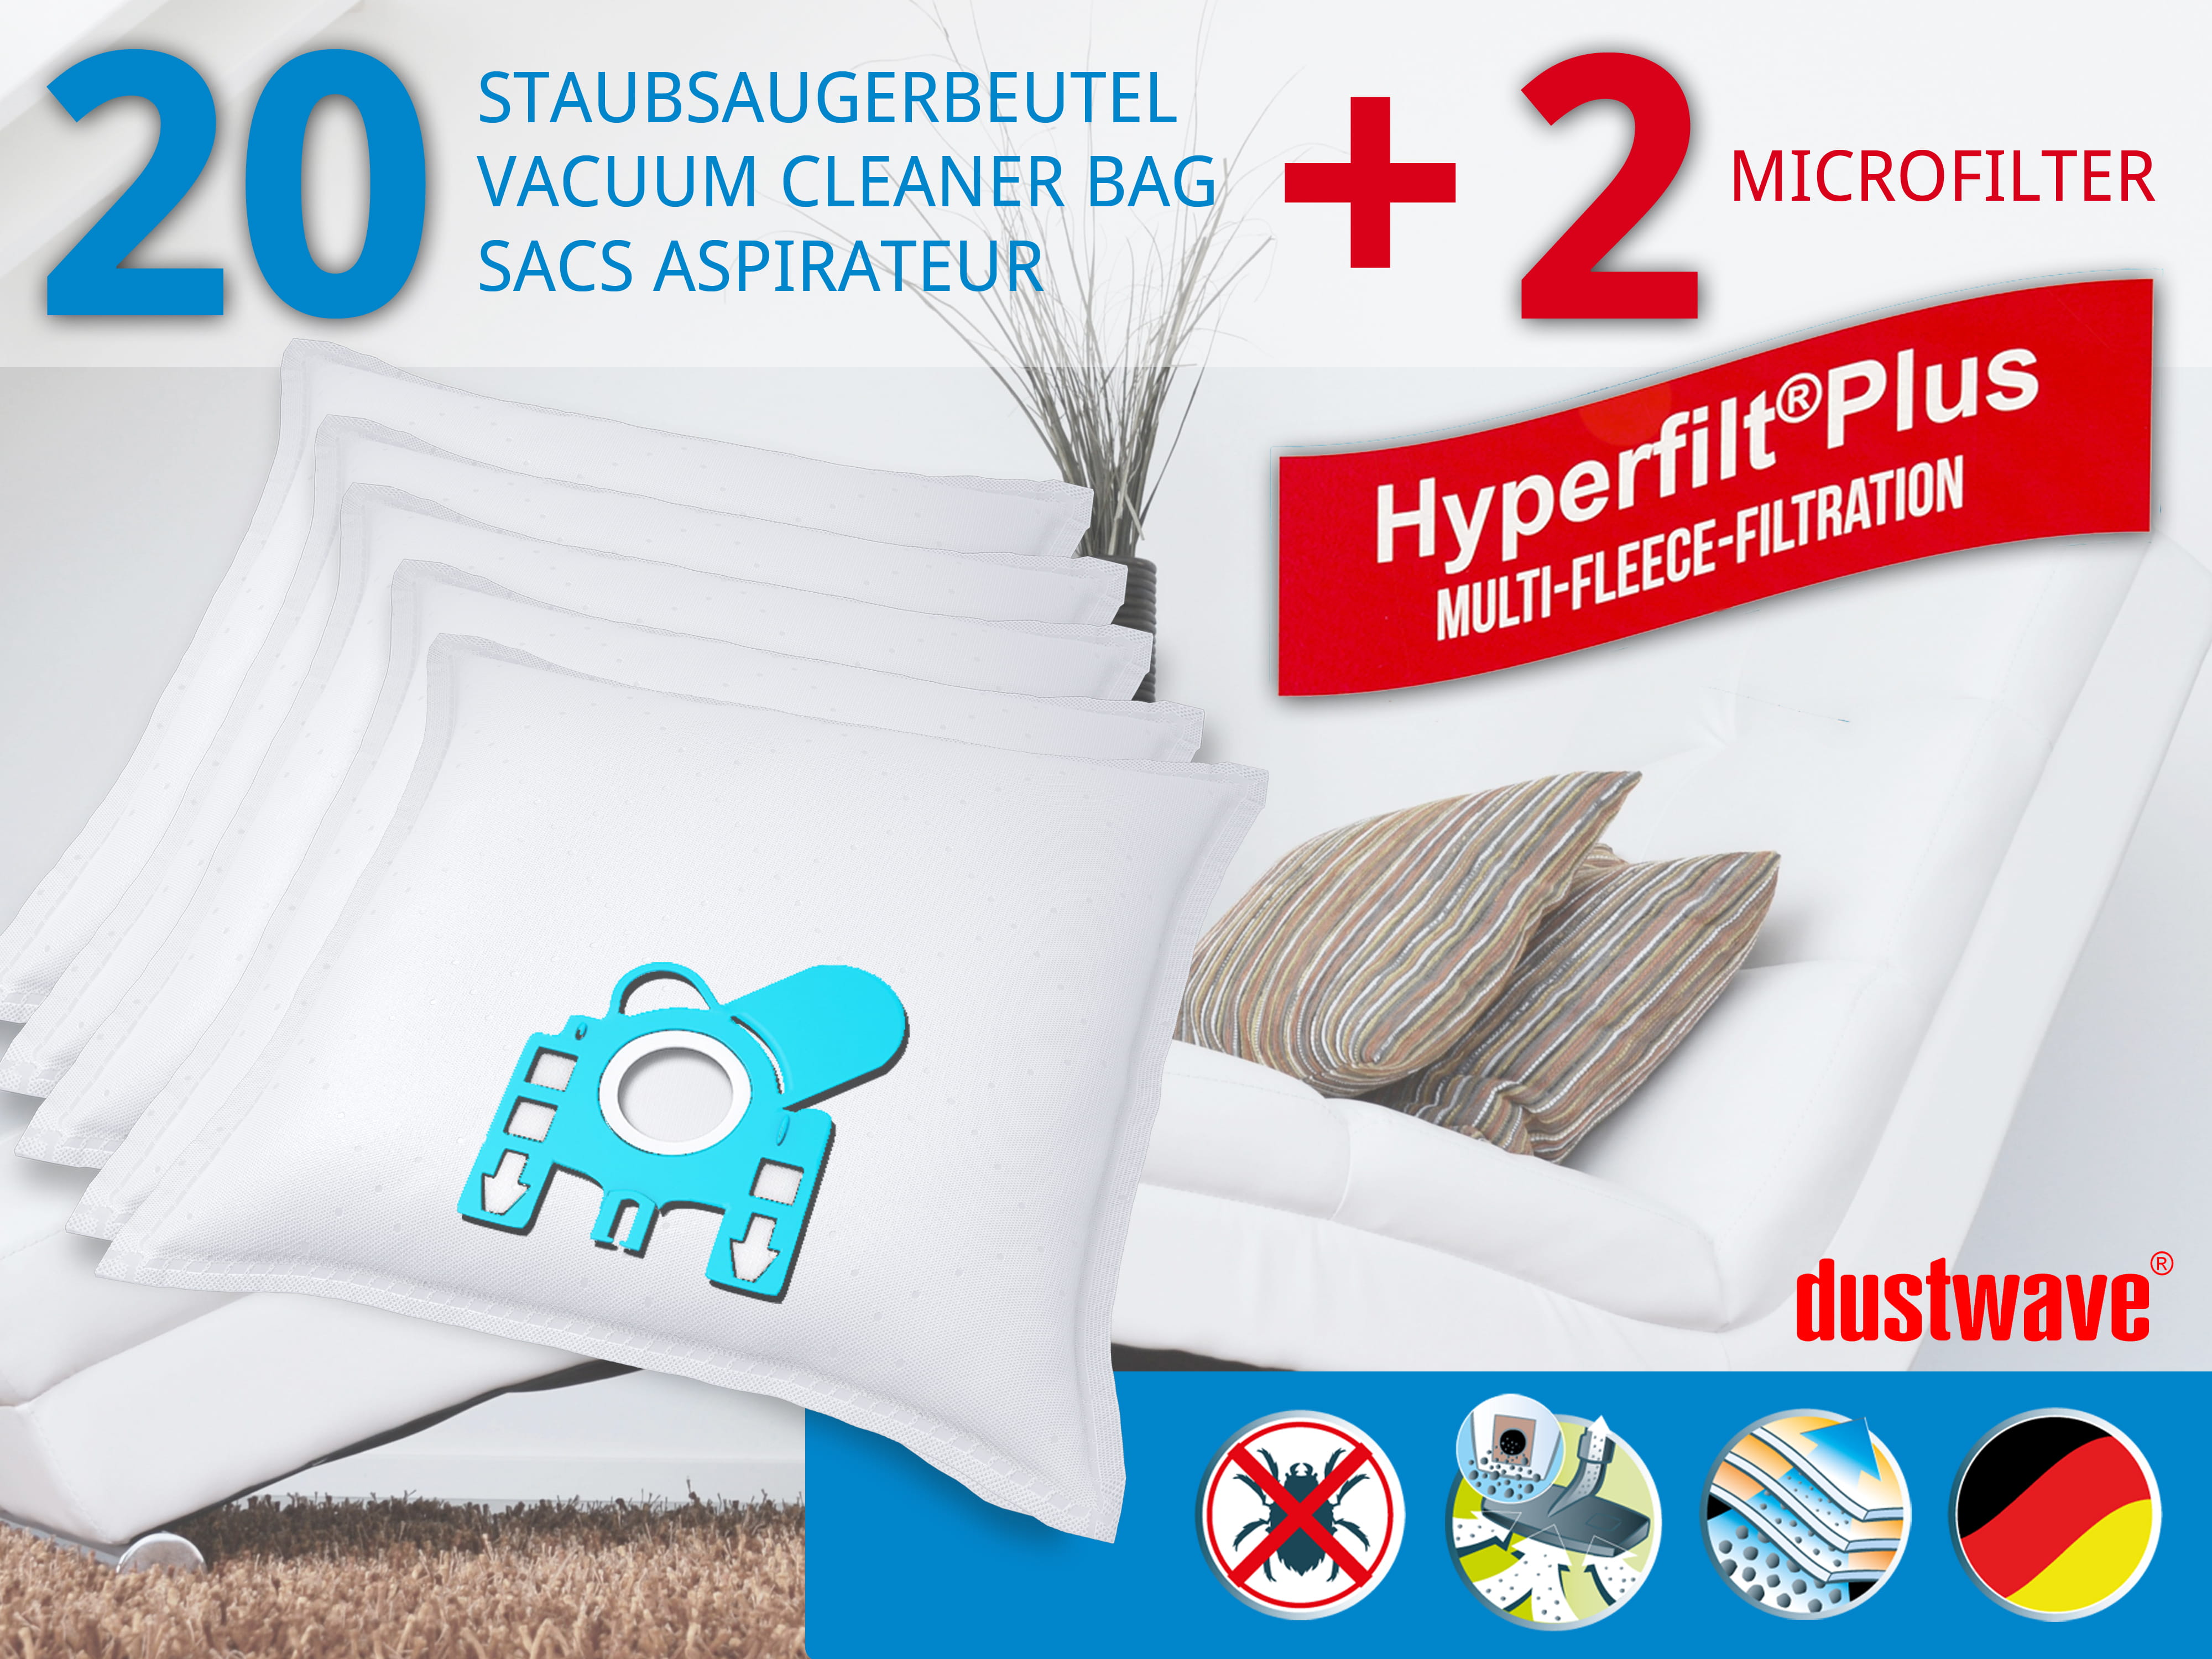 Dustwave® 20 Staubsaugerbeutel für Miele S5510 / S 5510 - hocheffizient, mehrlagiges Mikrovlies mit Hygieneverschluss - Made in Germany